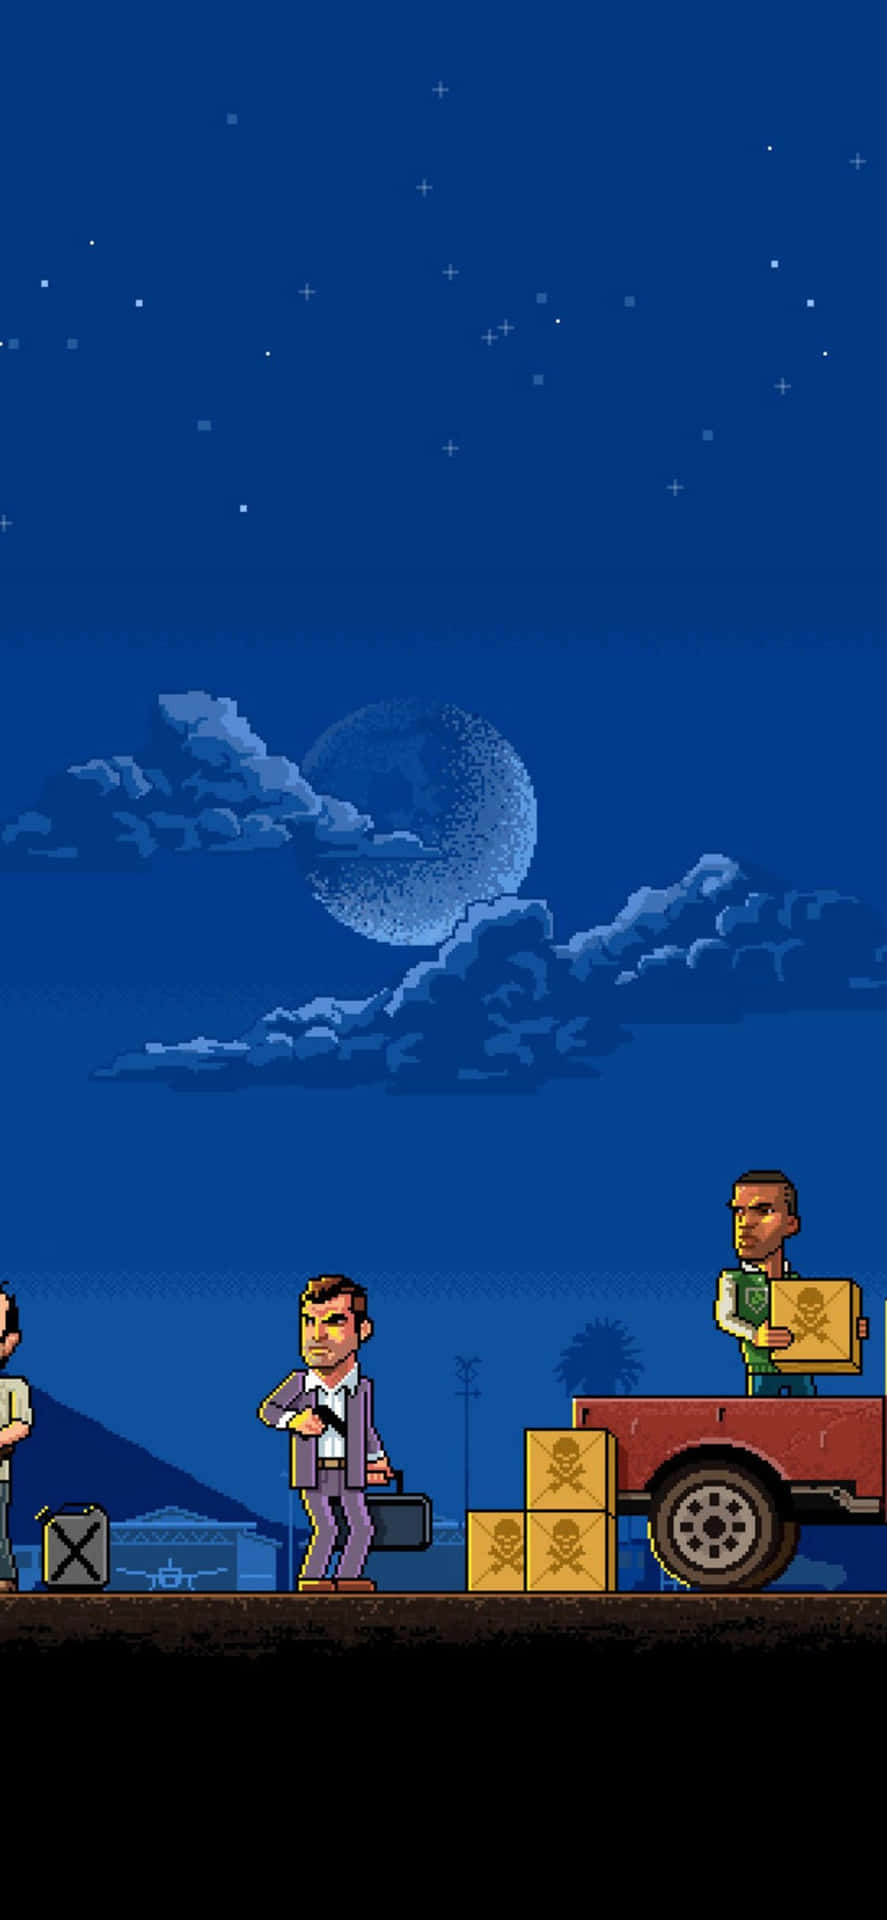 Fondode Pantalla De Grand Theft Auto V En Pixel Art Para Iphone X